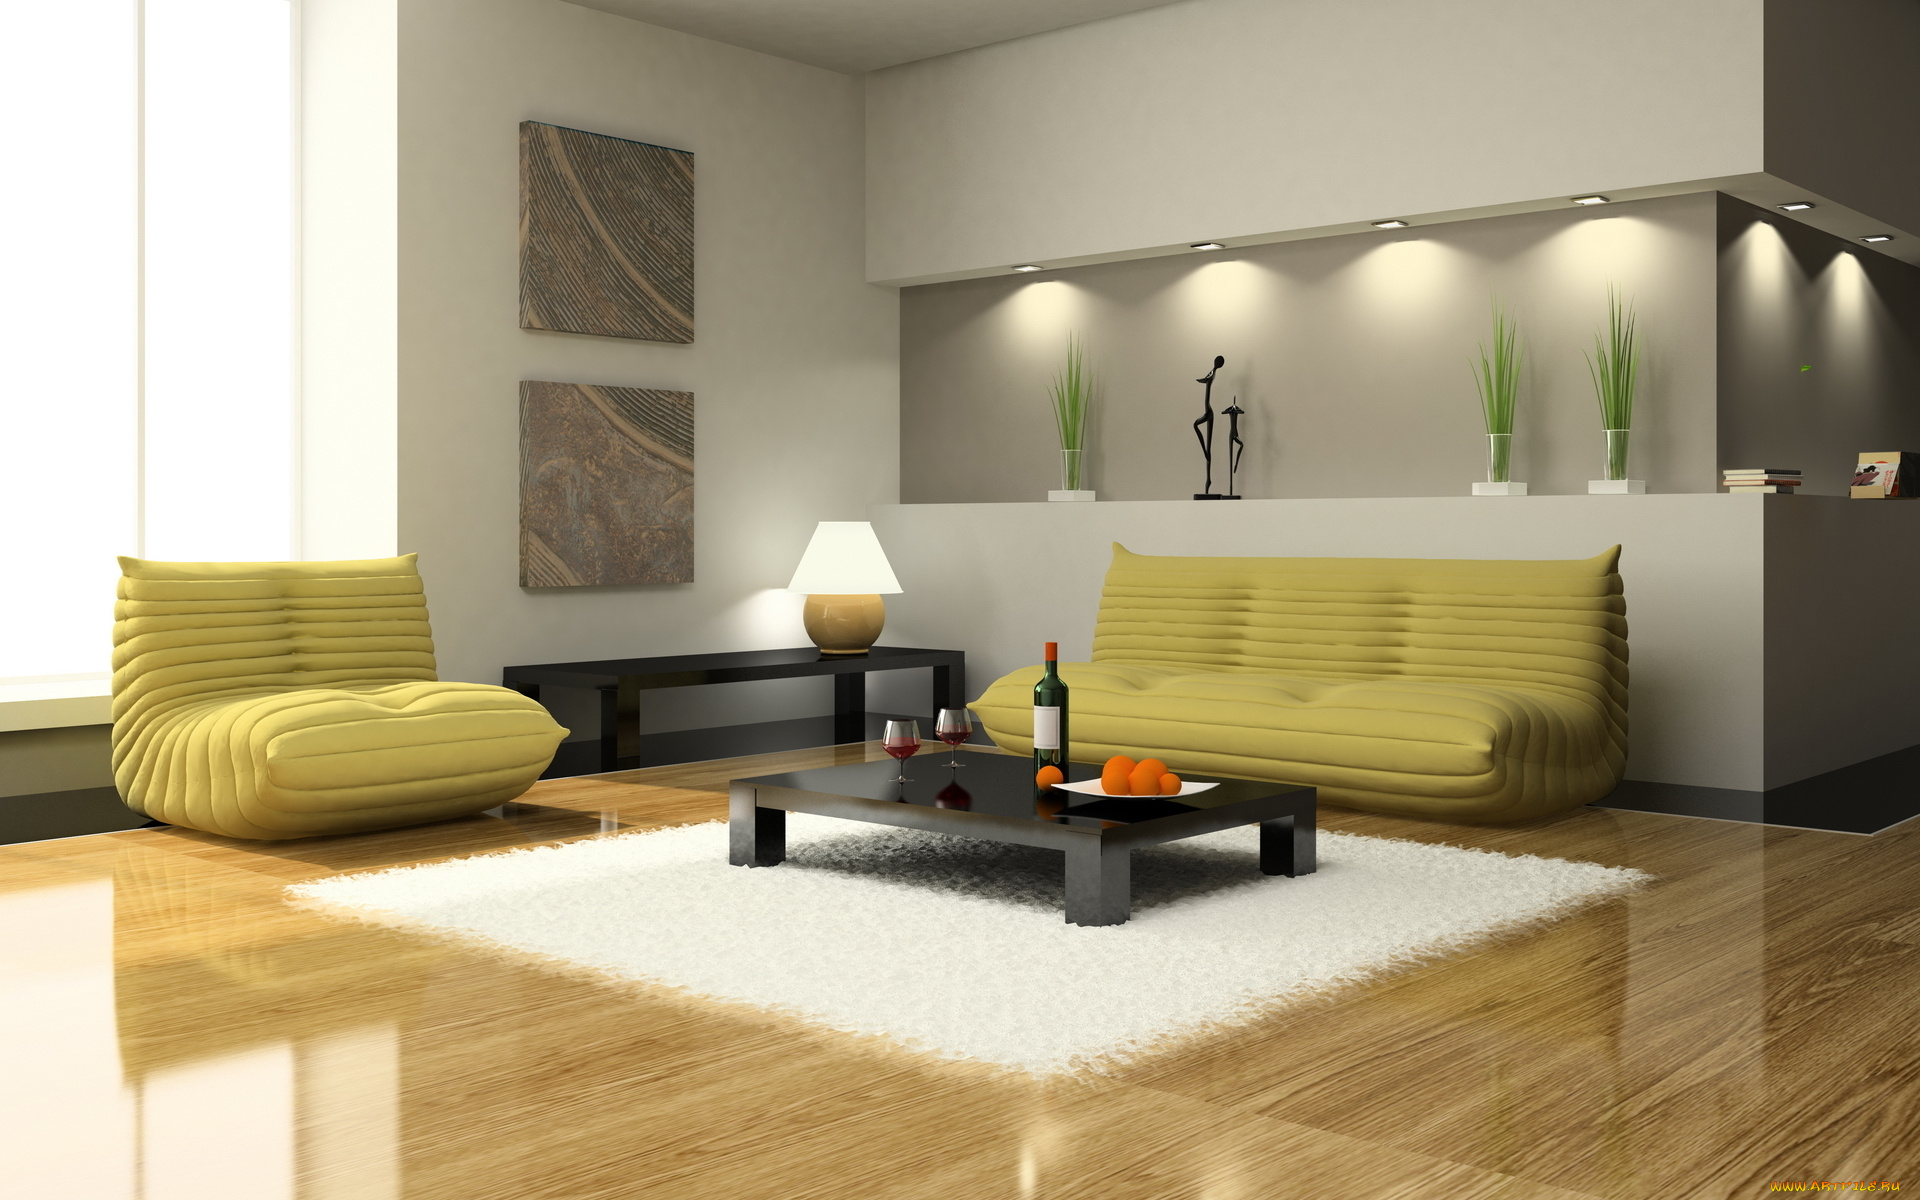 3д, графика, realism, реализм, диван, кресло, столик, интерьер, дизайн, гостиная